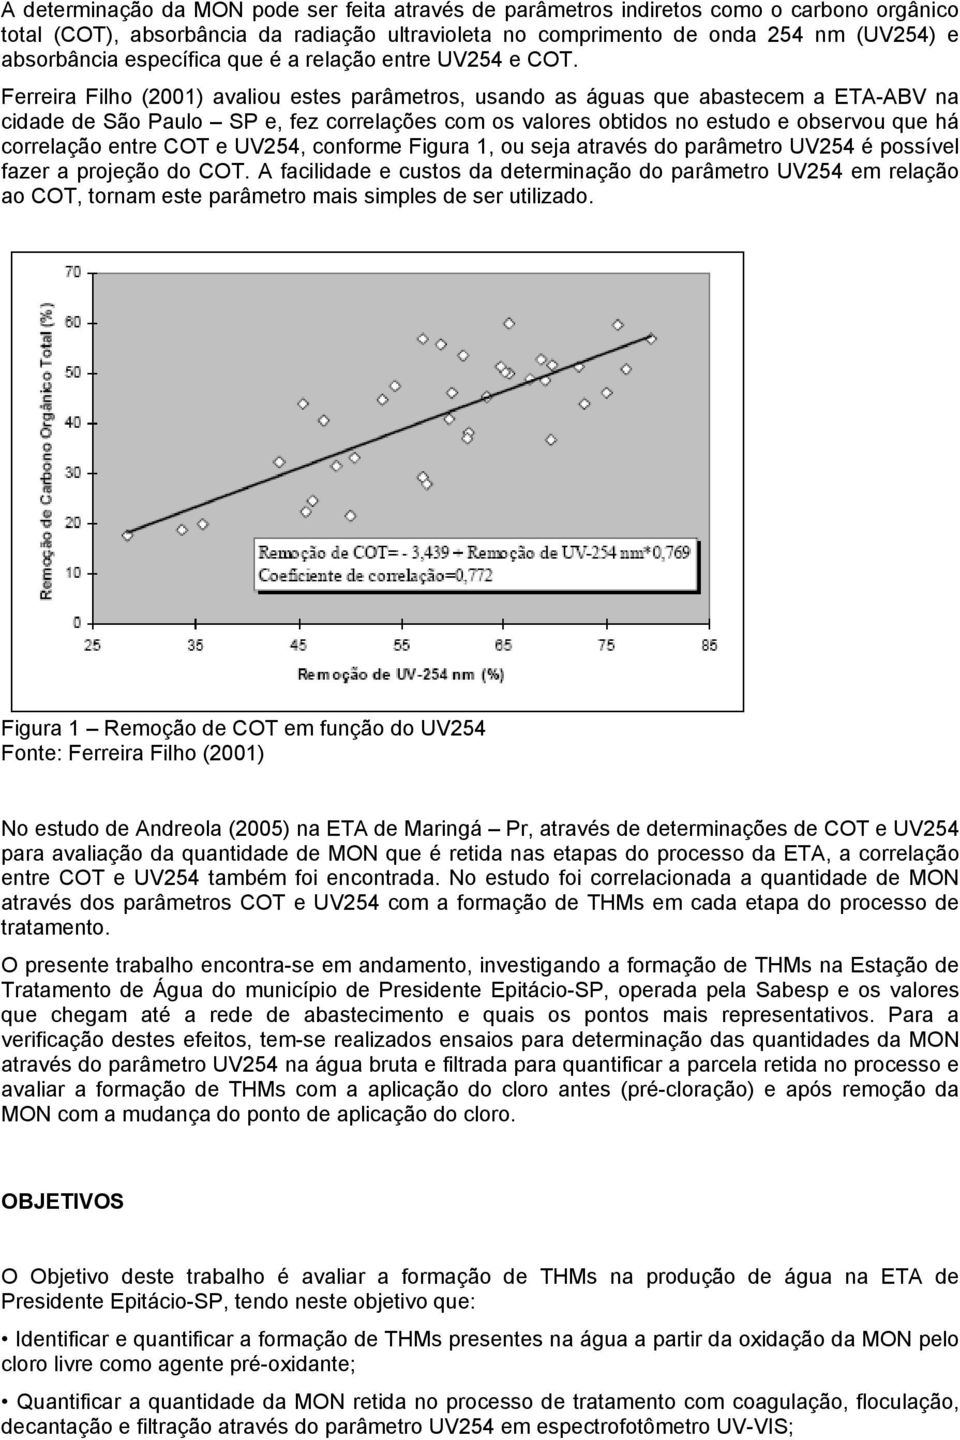 Ferreira Filho (2001) avaliou estes parâmetros, usando as águas que abastecem a ETA-ABV na cidade de São Paulo SP e, fez correlações com os valores obtidos no estudo e observou que há correlação